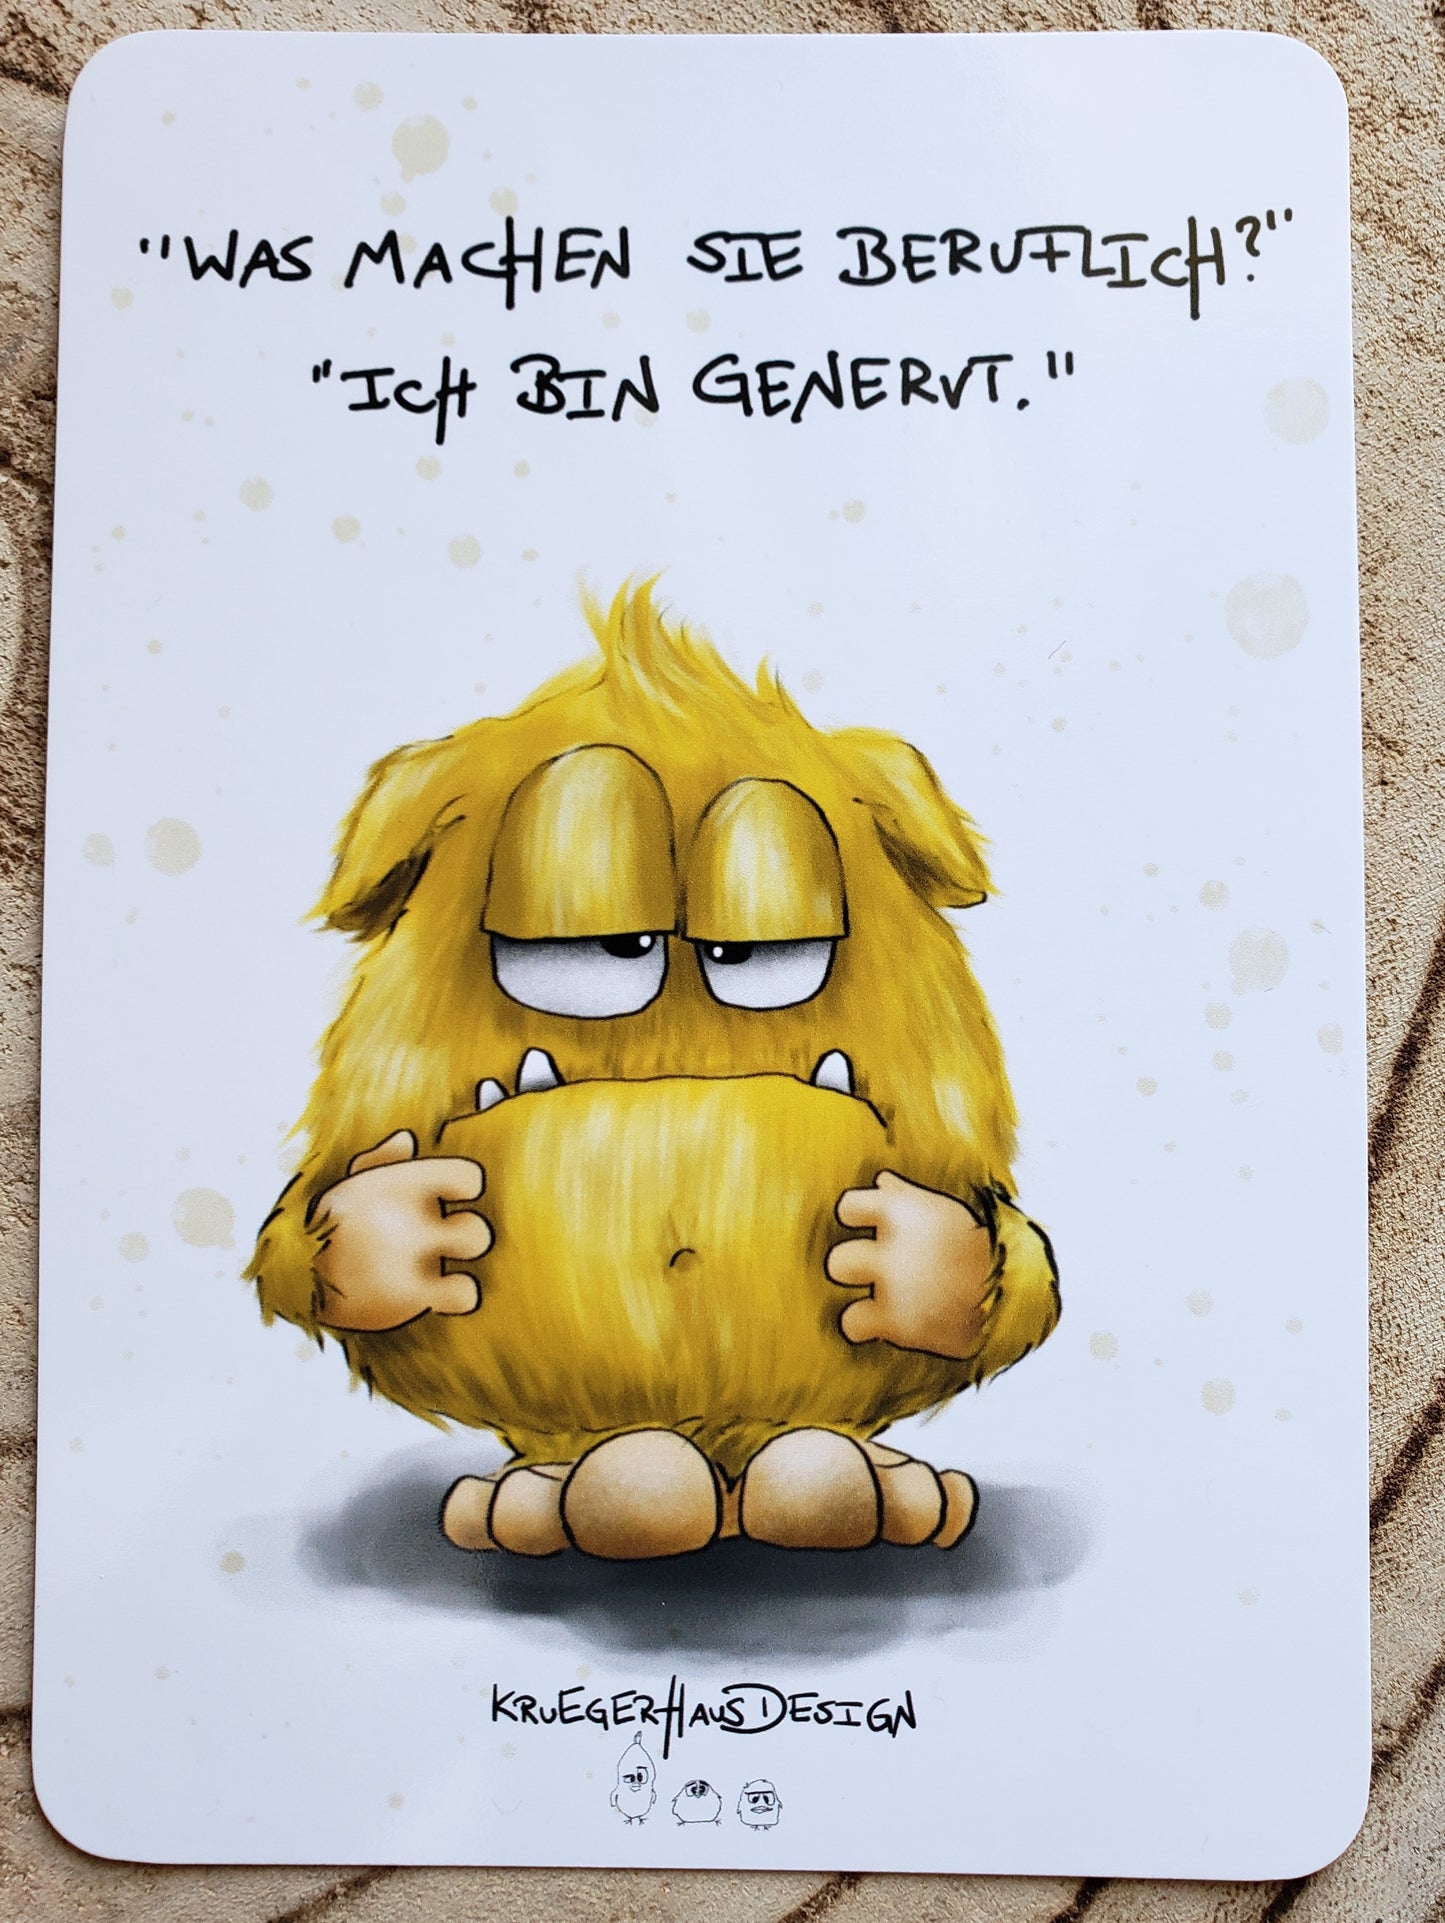 Postkarte Monster Kruegerhausdesign "Was machen Sie beruflich?..."